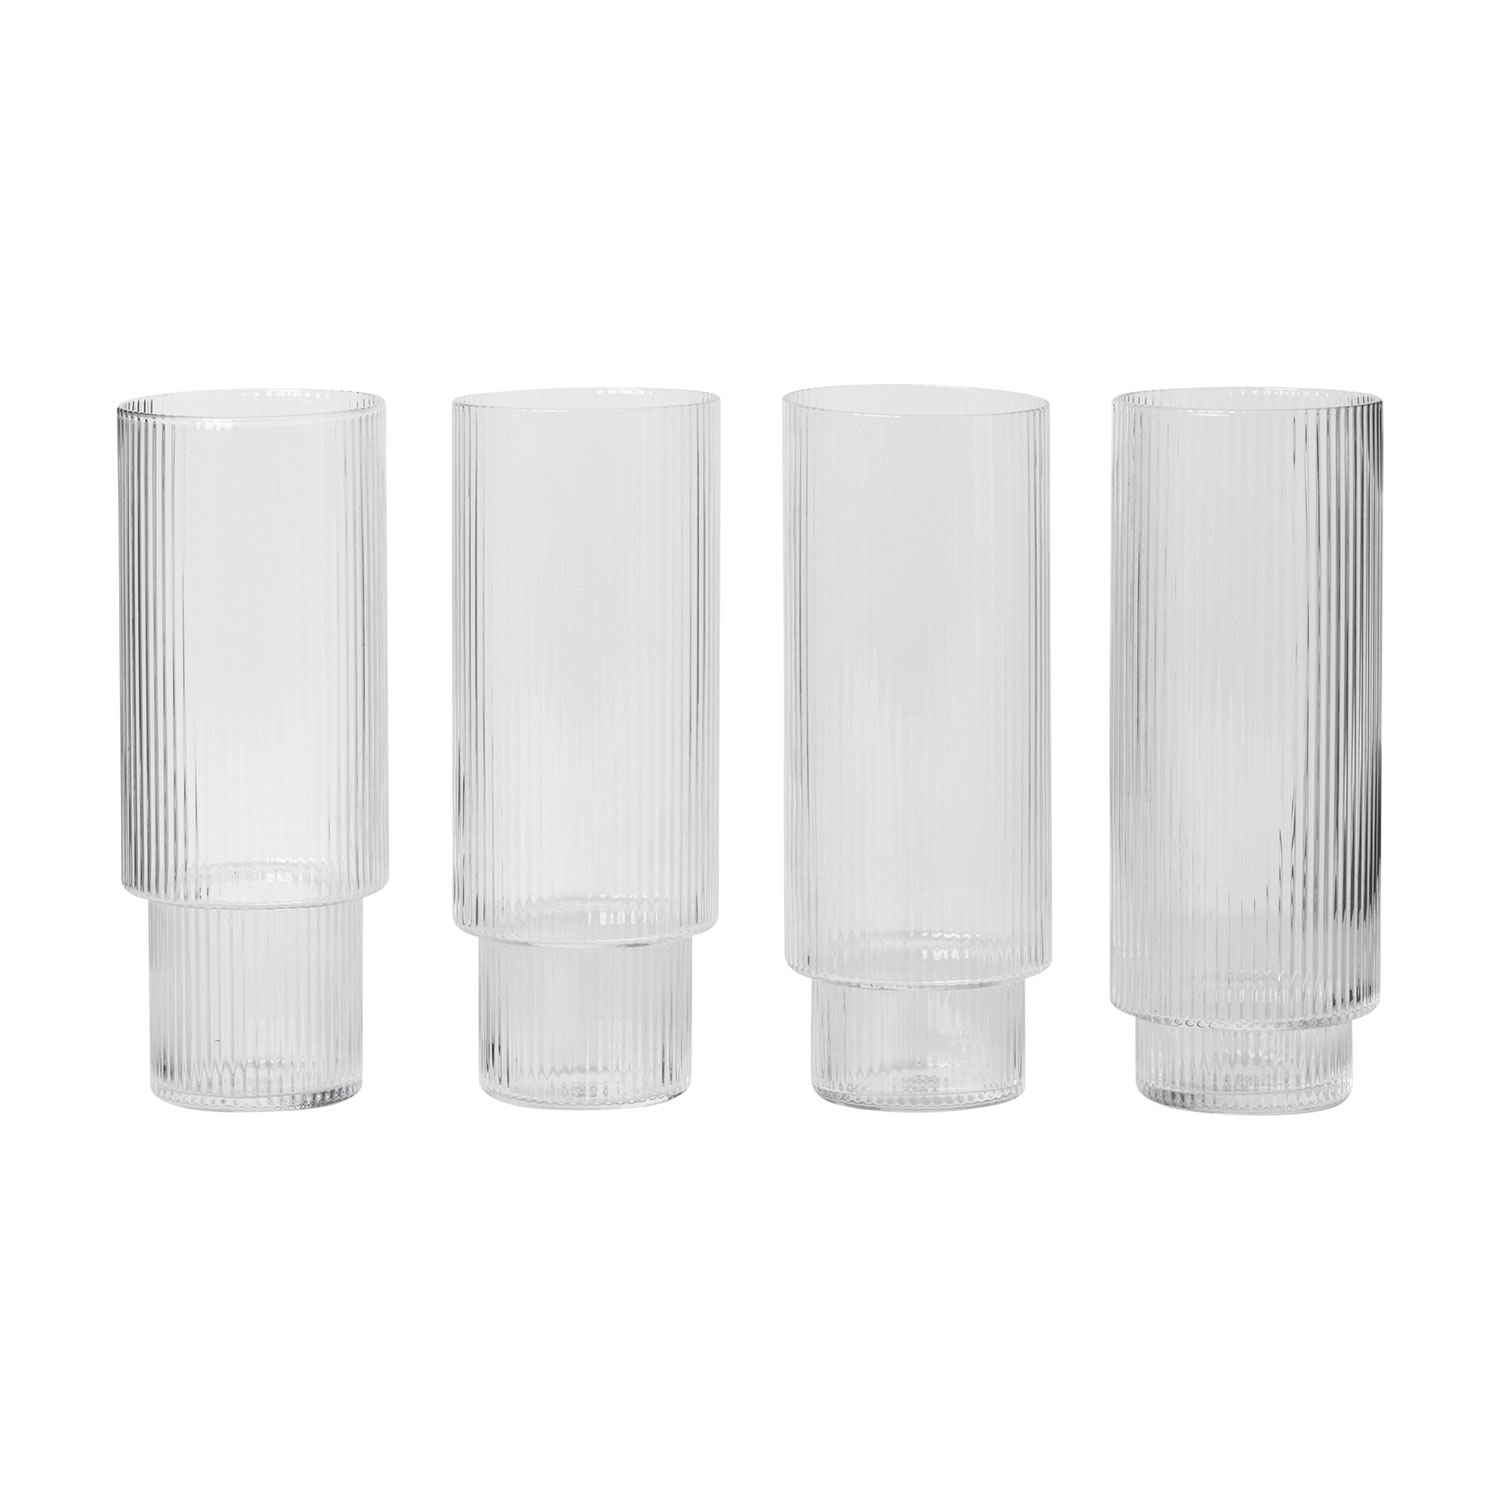 https://royaldesign.com/image/11/ferm-living-ripple-long-drink-glasses-4-pack-0